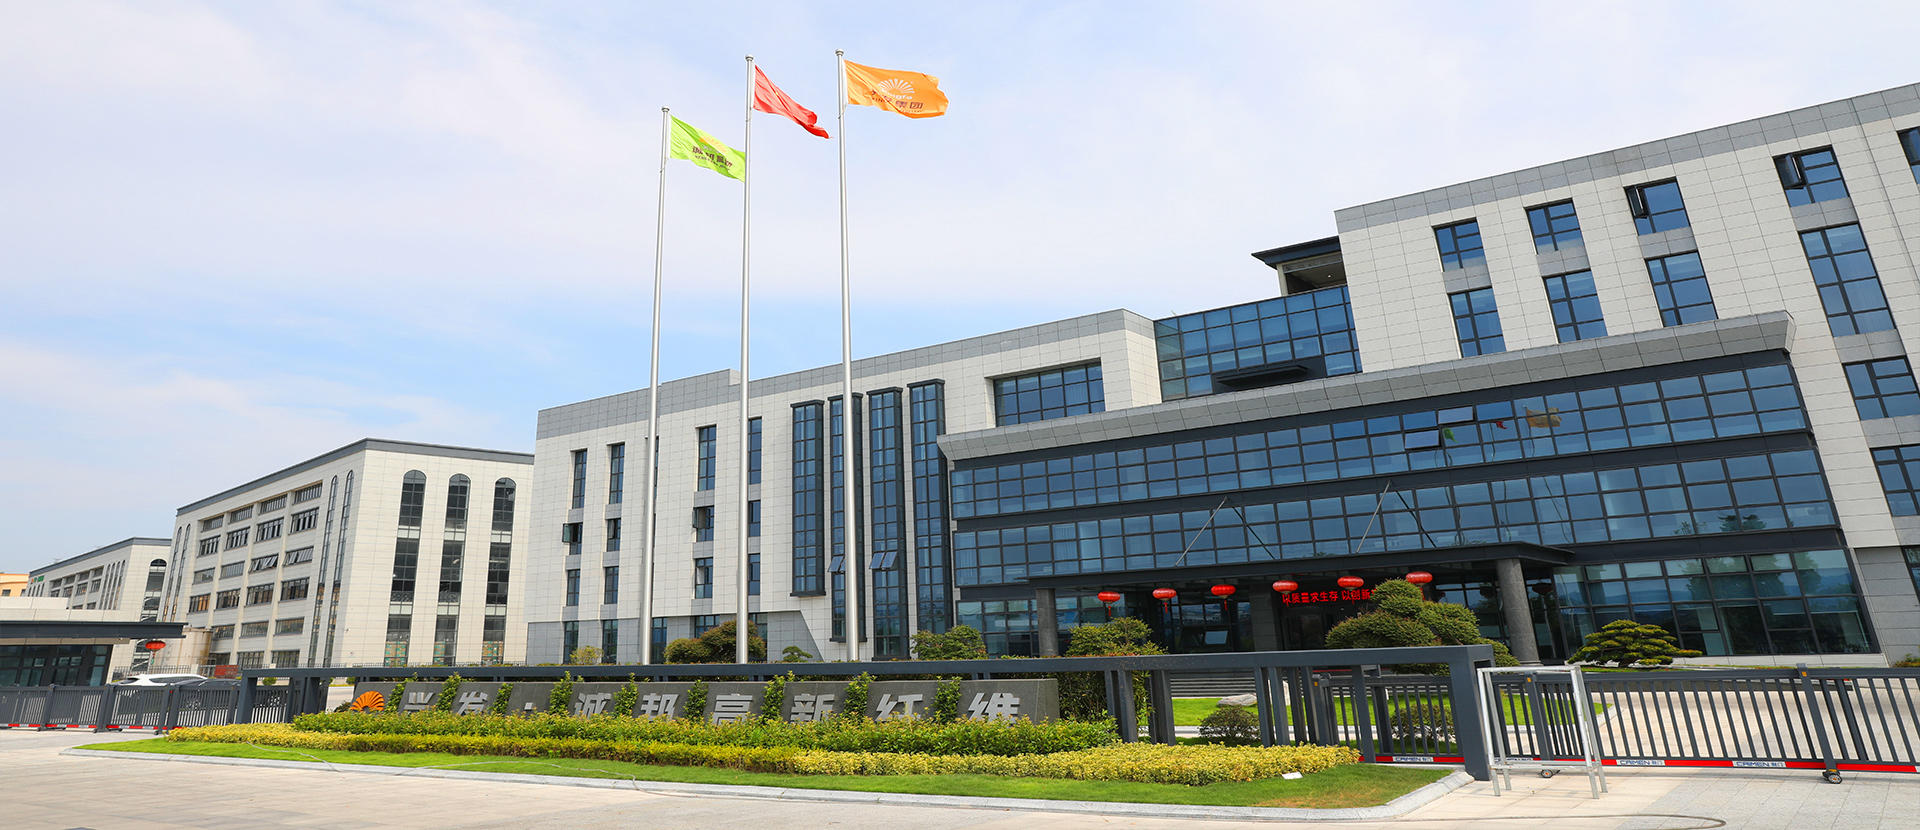 factory of Shaoxing Chengbang High Tech Fiber Technology Co., Ltd